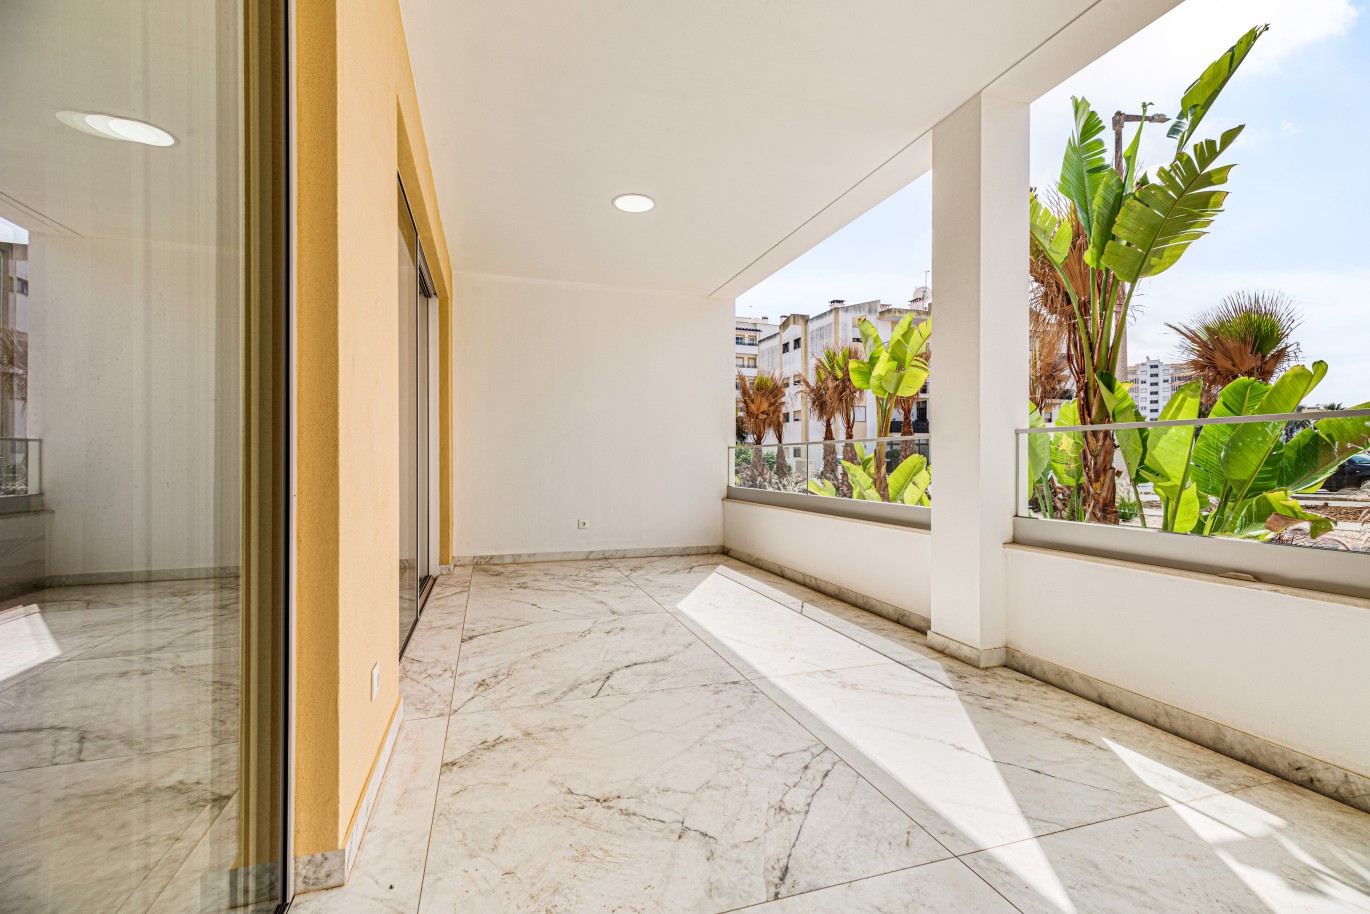 Apartamento, com terraço, para venda, em Lagos, Algarve_238614